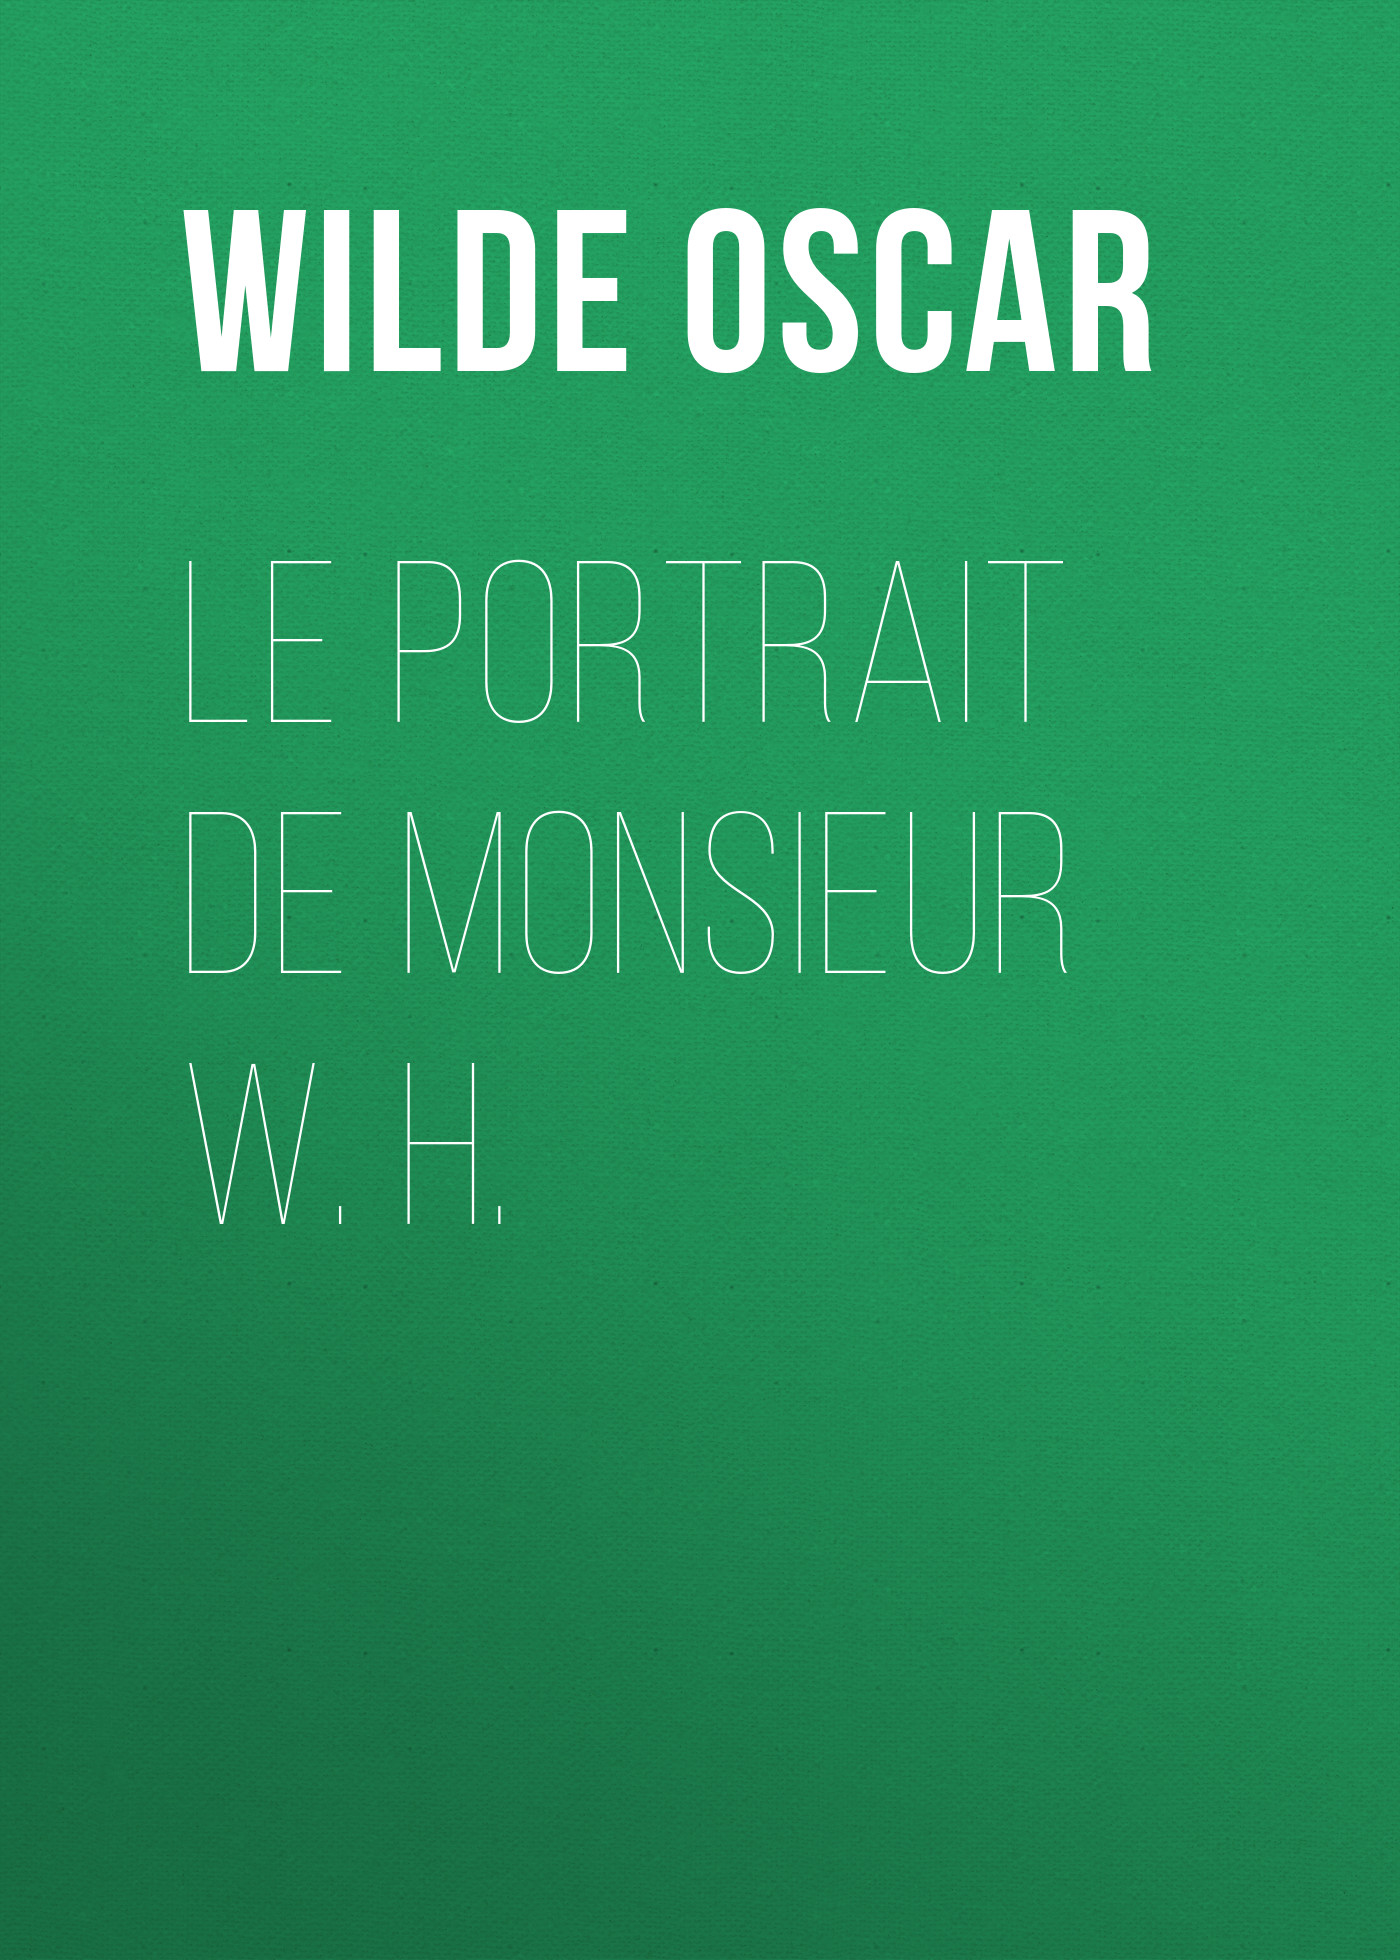 Книга Le portrait de monsieur W. H. из серии , созданная Oscar Wilde, может относится к жанру Литература 19 века, Зарубежная классика. Стоимость электронной книги Le portrait de monsieur W. H. с идентификатором 25561140 составляет 0 руб.